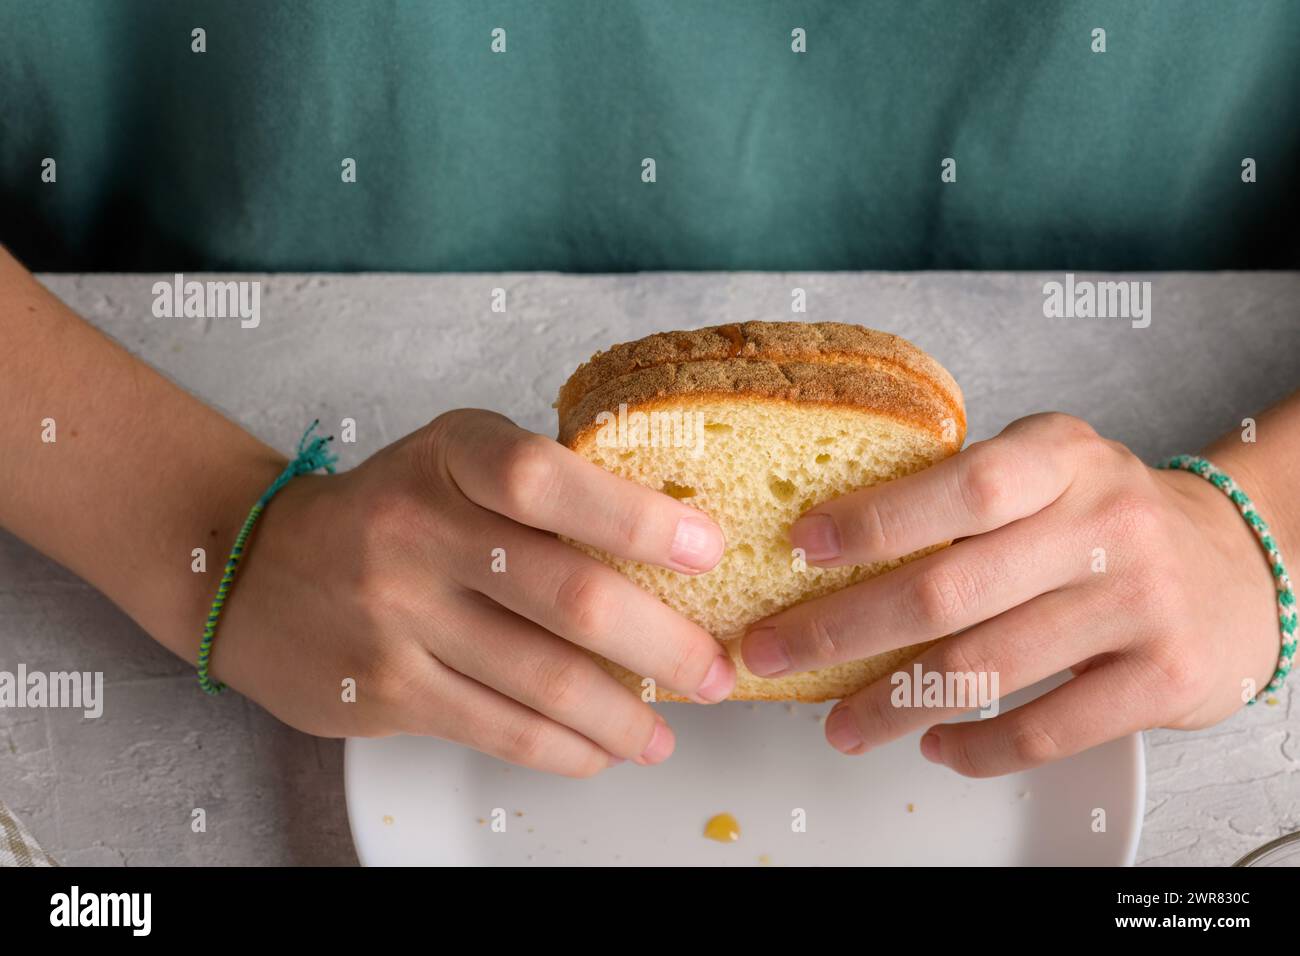 mains de femme tenant un sandwich avec du miel et du beurre d'arachide de pain de blé sur une assiette blanche, pour prendre un petit déjeuner, de près. Snack typique, nourriture lif Banque D'Images